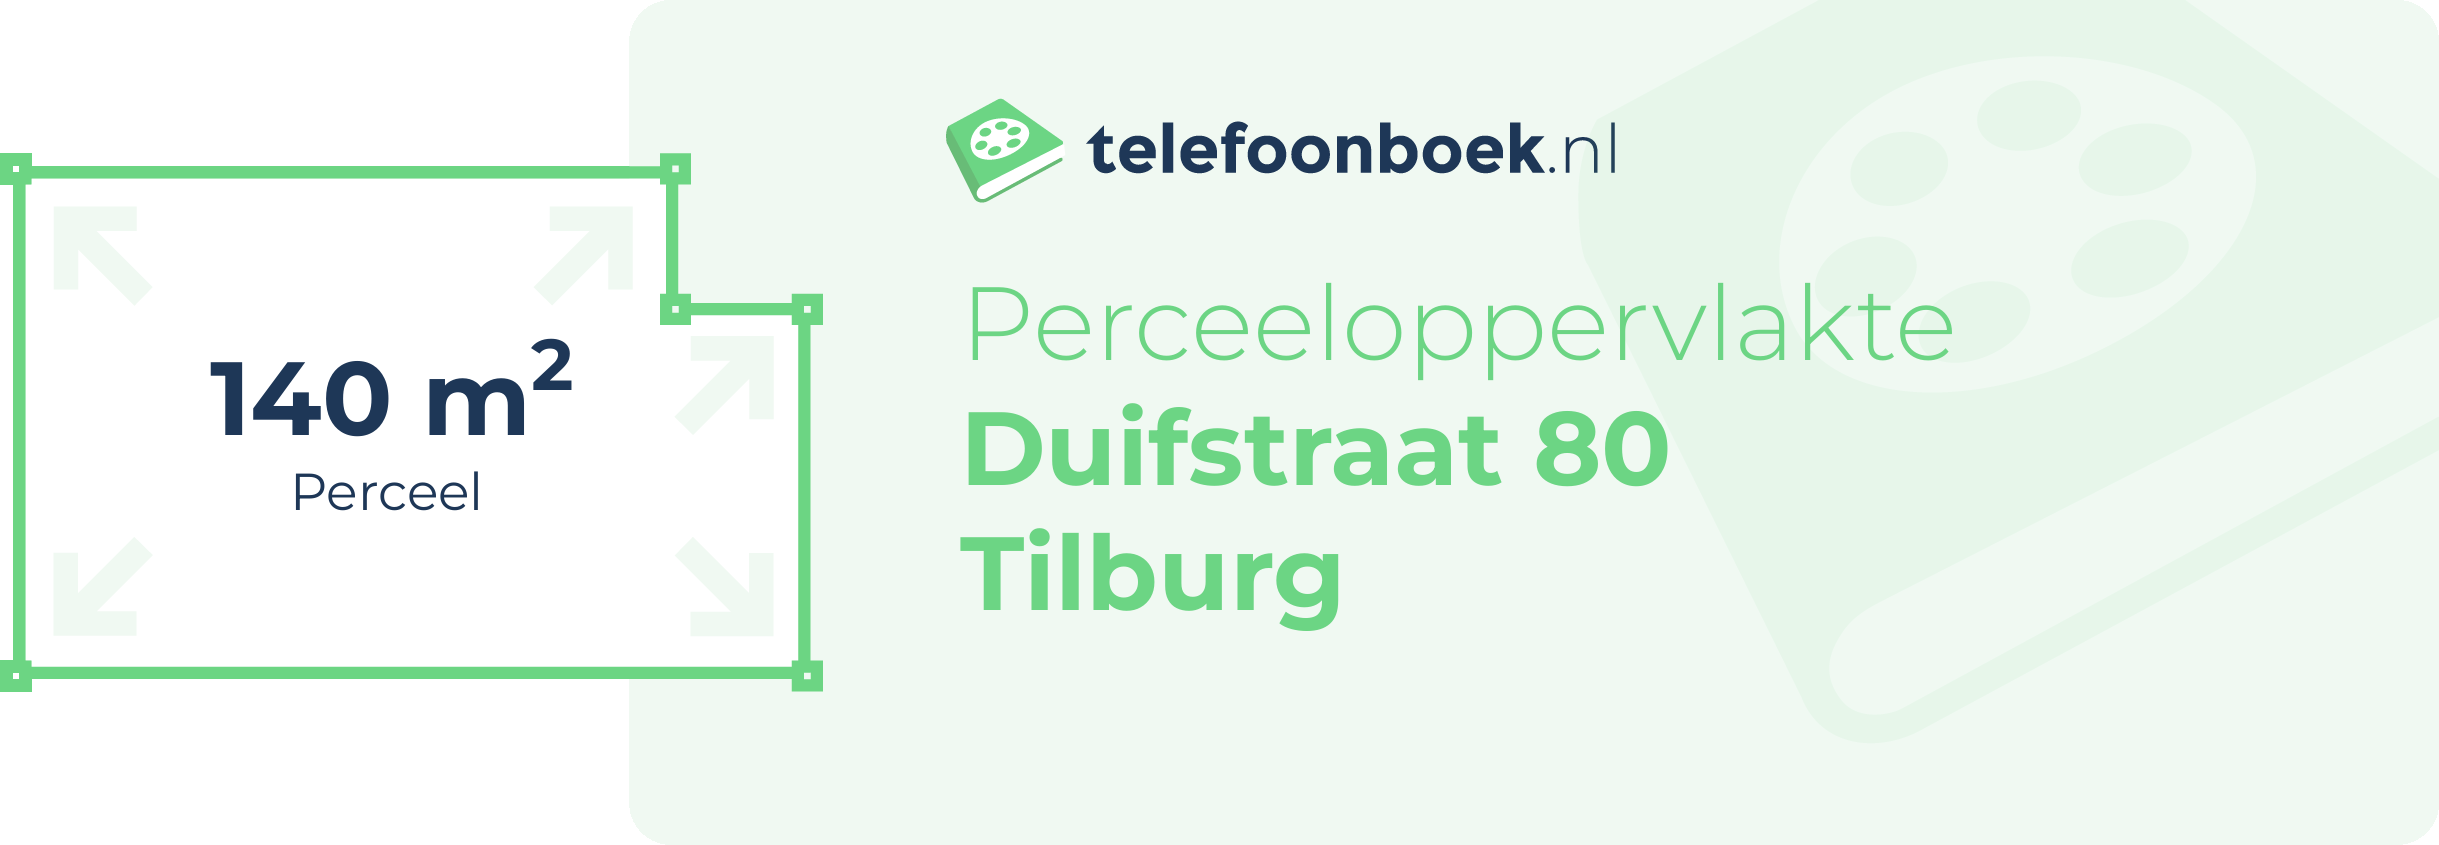 Perceeloppervlakte Duifstraat 80 Tilburg